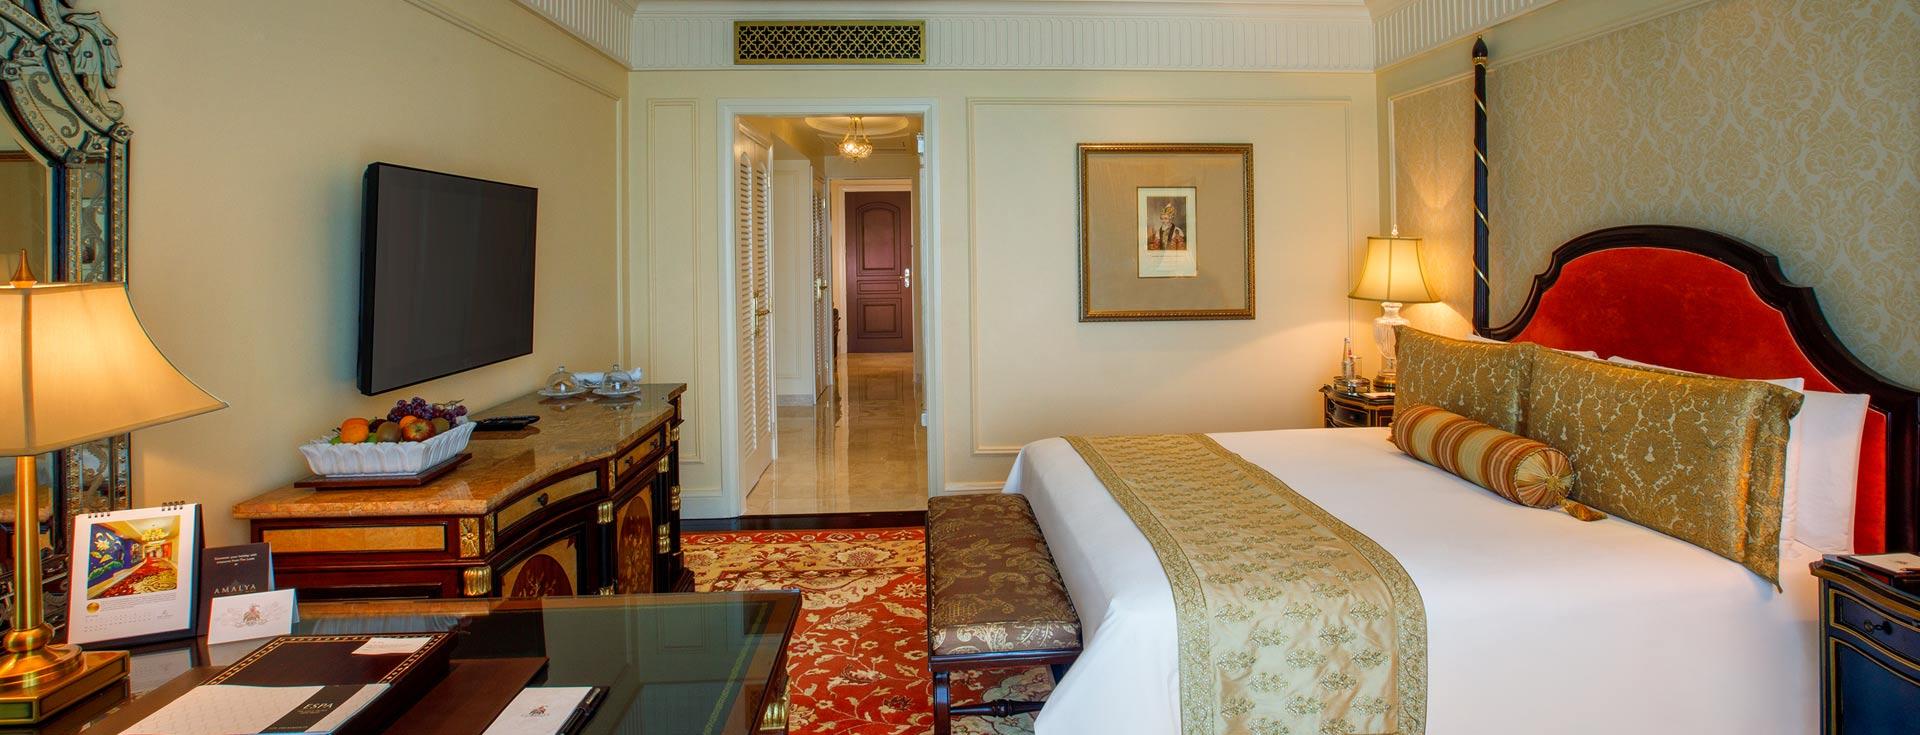 Executive Suite - Leela New Delhi Hotel